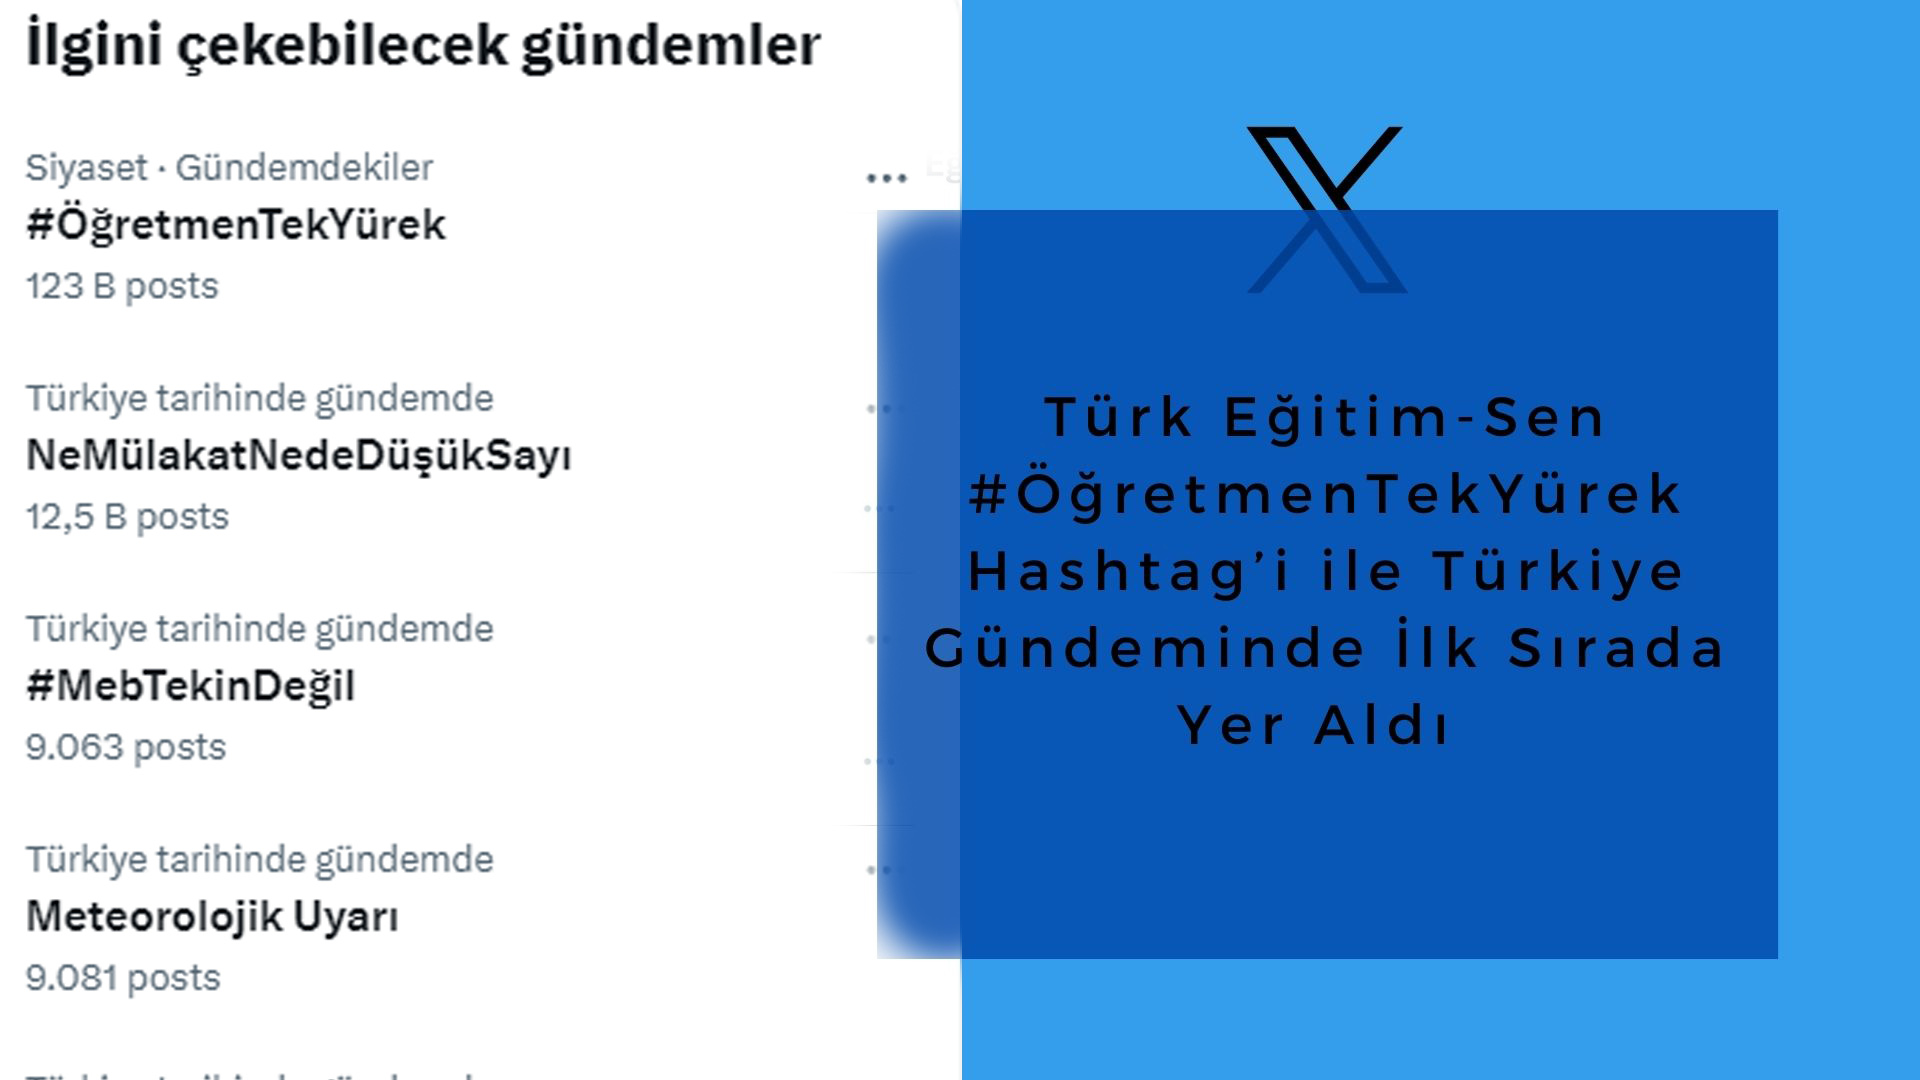 Türk Eğitim-Sen #ÖğretmenTekYürek Hashtag’i ile Türkiye Gündeminde İlk Sırada Yer Aldı